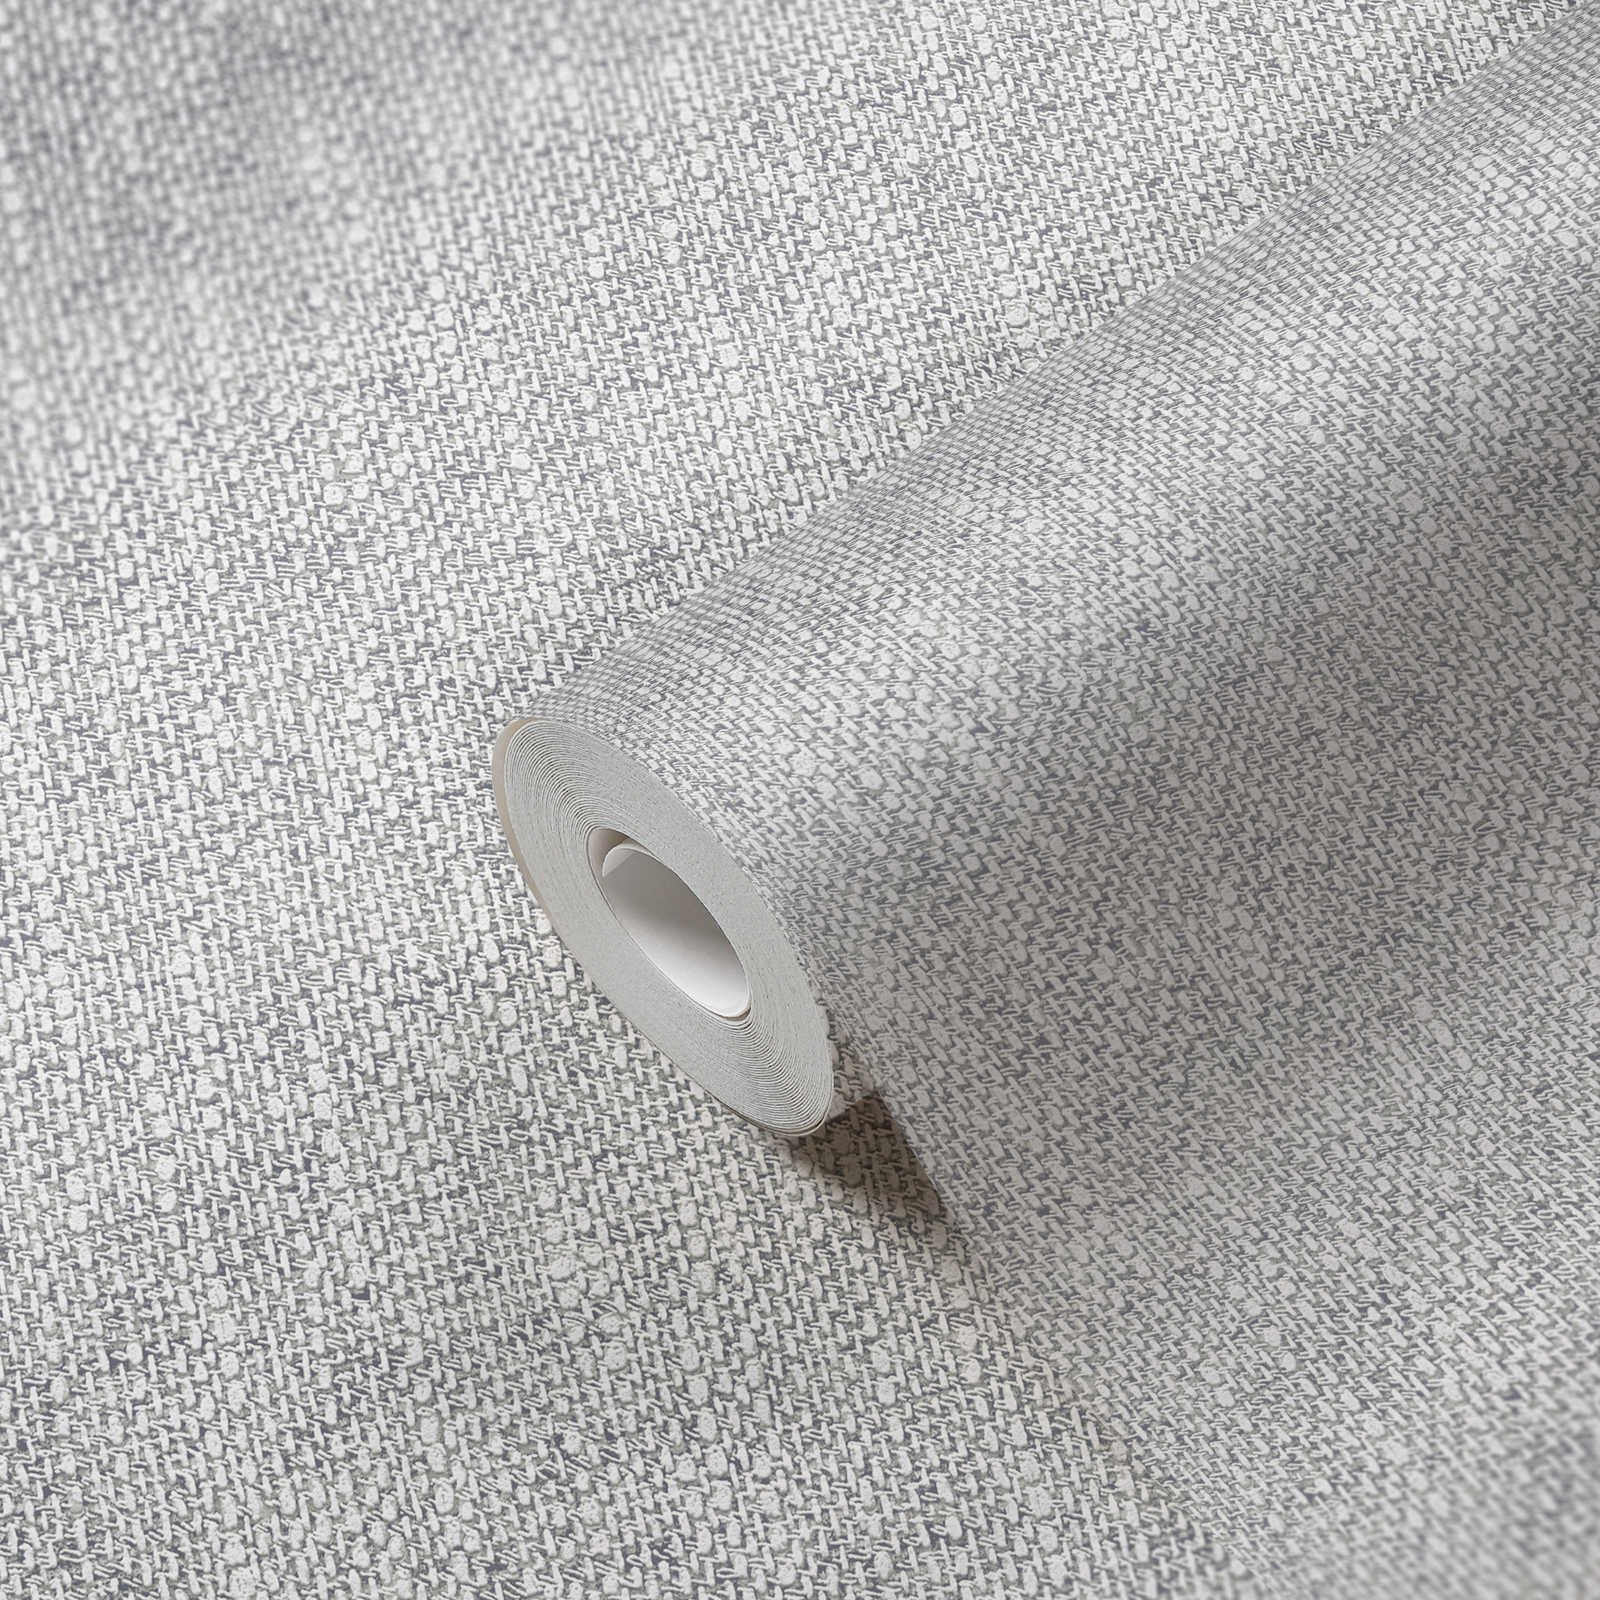             Papier peint intissé avec aspect tissé réaliste - gris, blanc
        